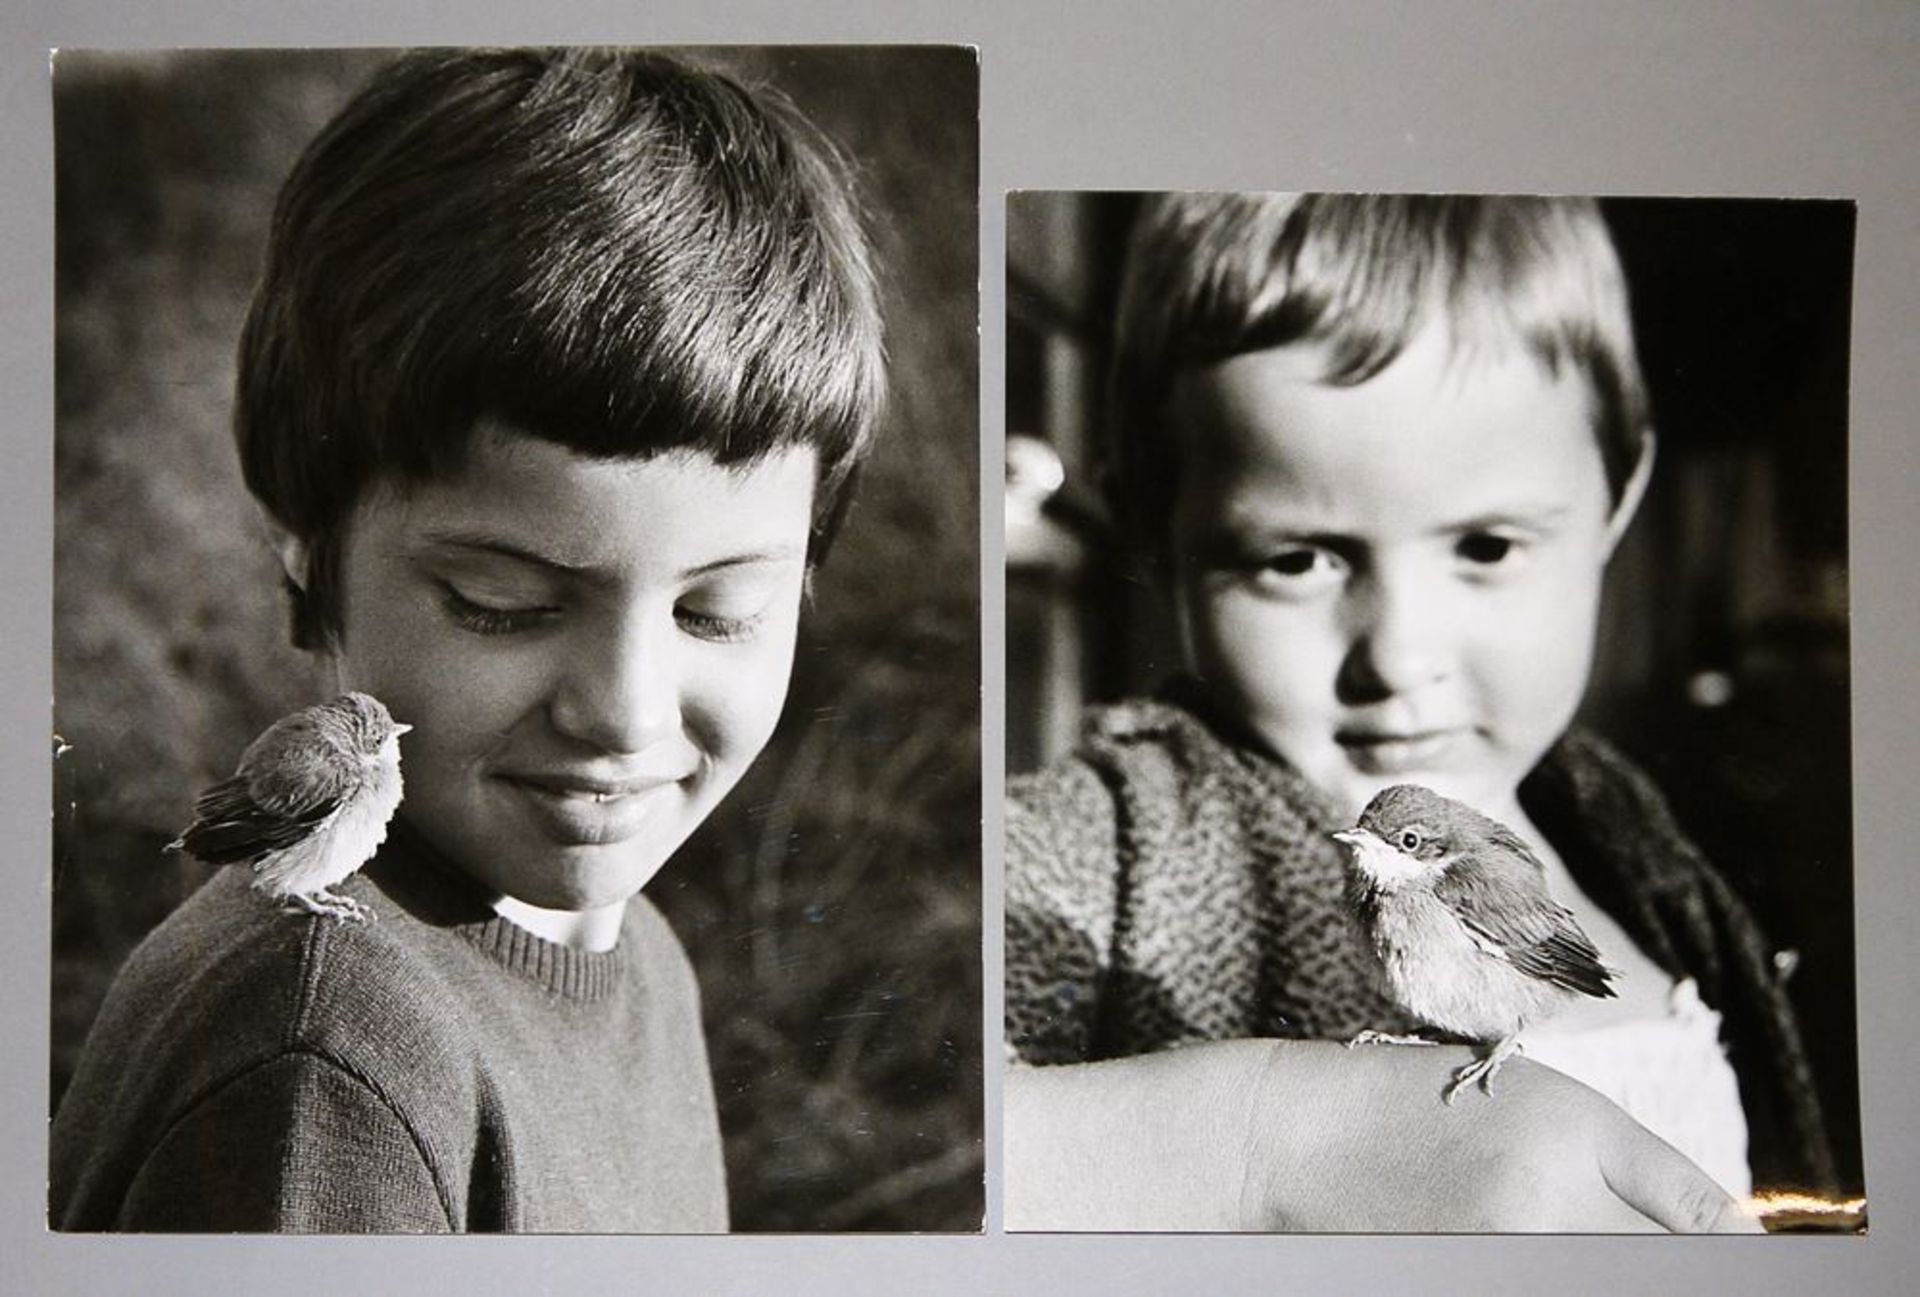 Toni Schneiders, Kinder mit jungem Vogel auf der Hand/Schulter, 2 s/w Fotographien